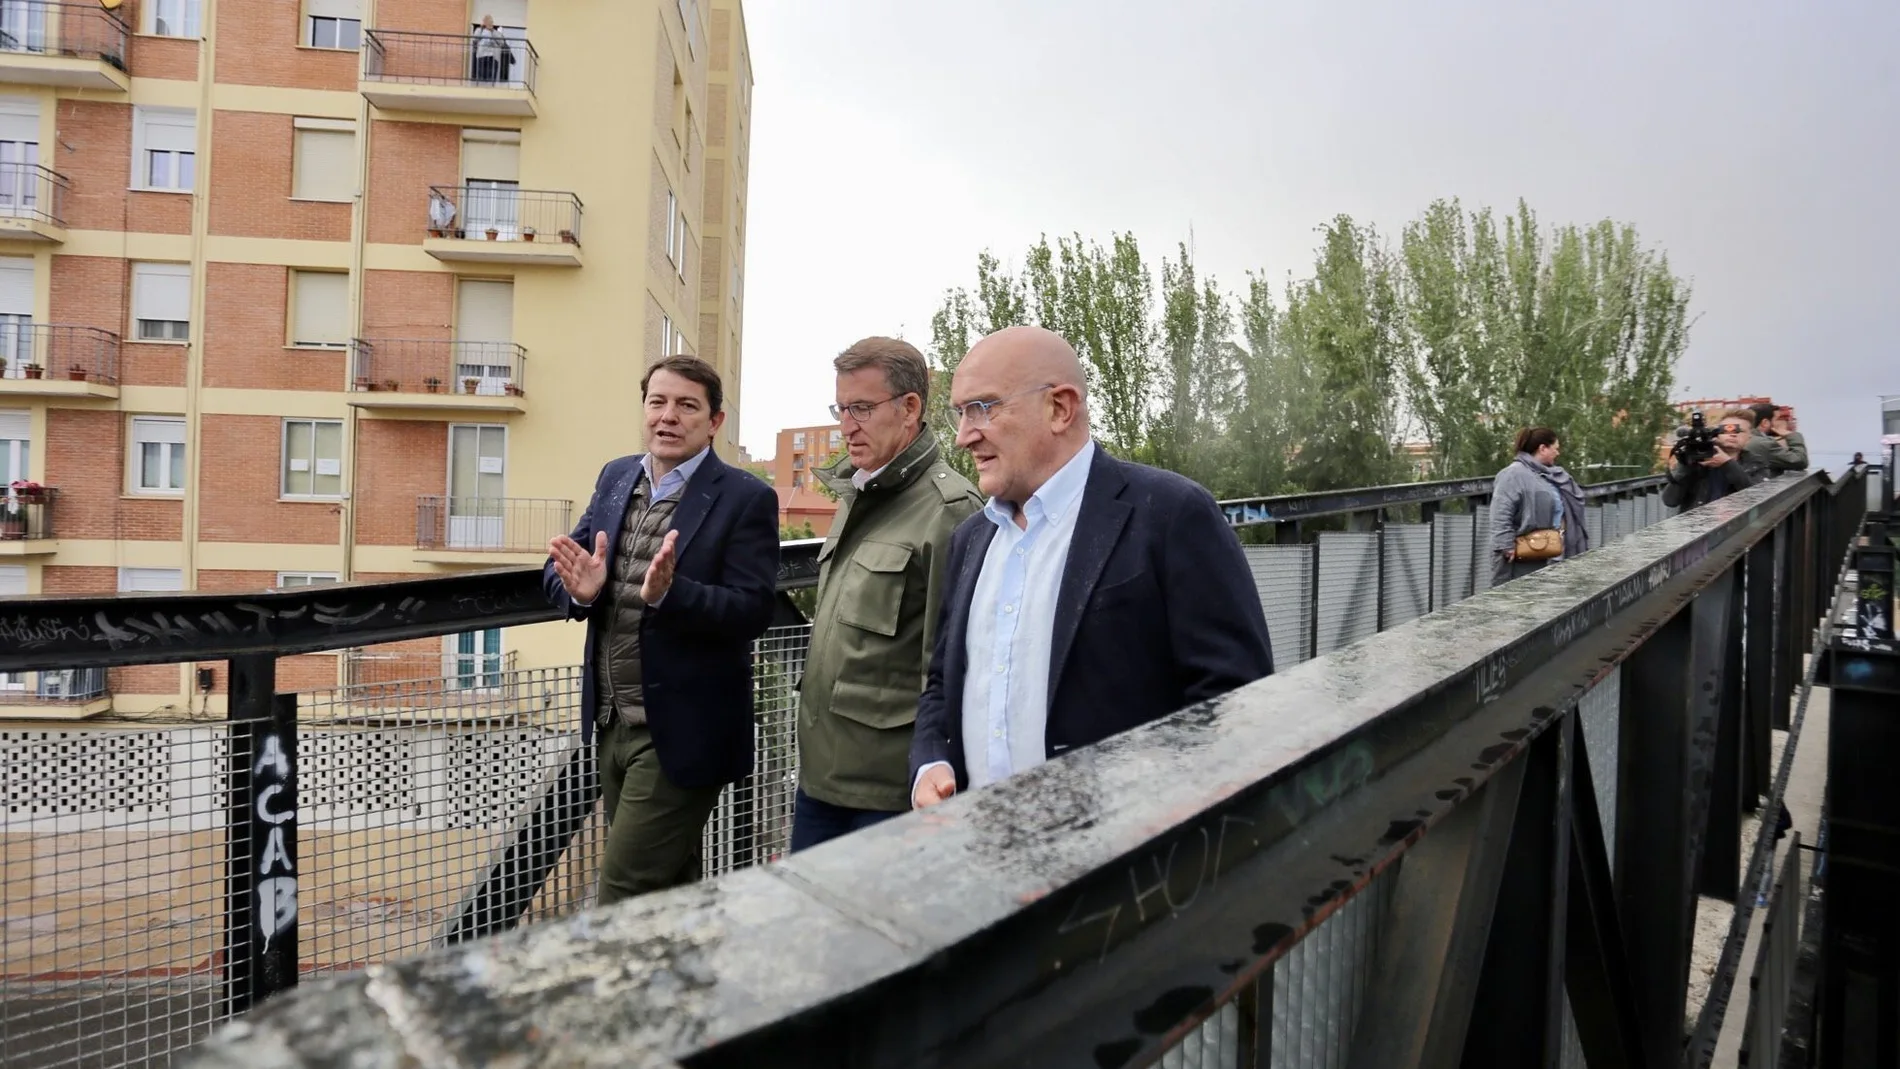 Carnero y Mañueco conversan con Feijóo mientras pasean por un puente sobre las vías del tren en Valladolid